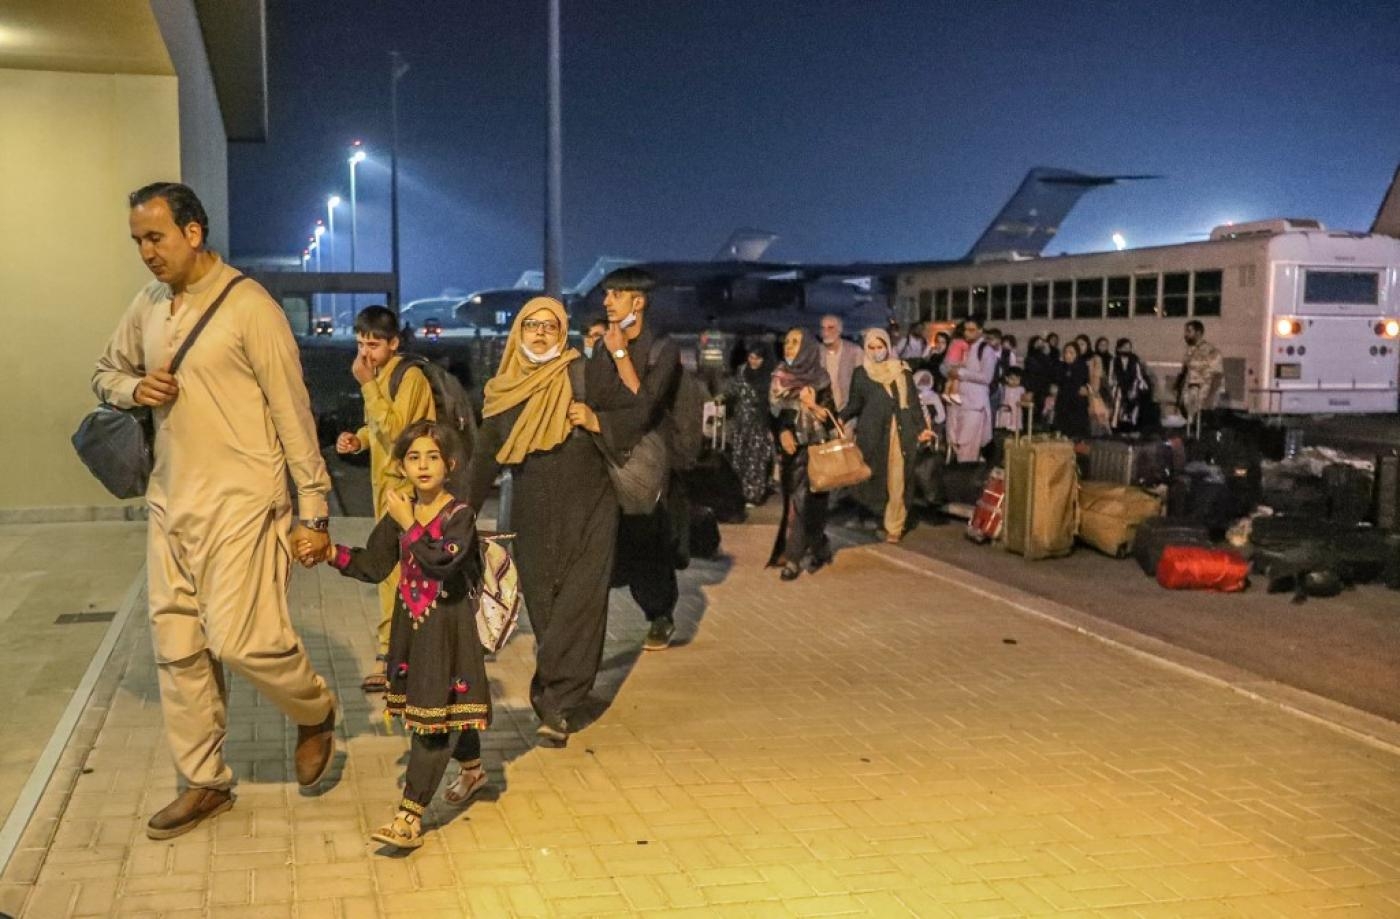 Des personnes évacuées d’Afghanistan arrivent à la base aérienne d’al-Udeid au Qatar, le 21 août 2021 (Bureau de communication du gouvernement qatari/AFP)